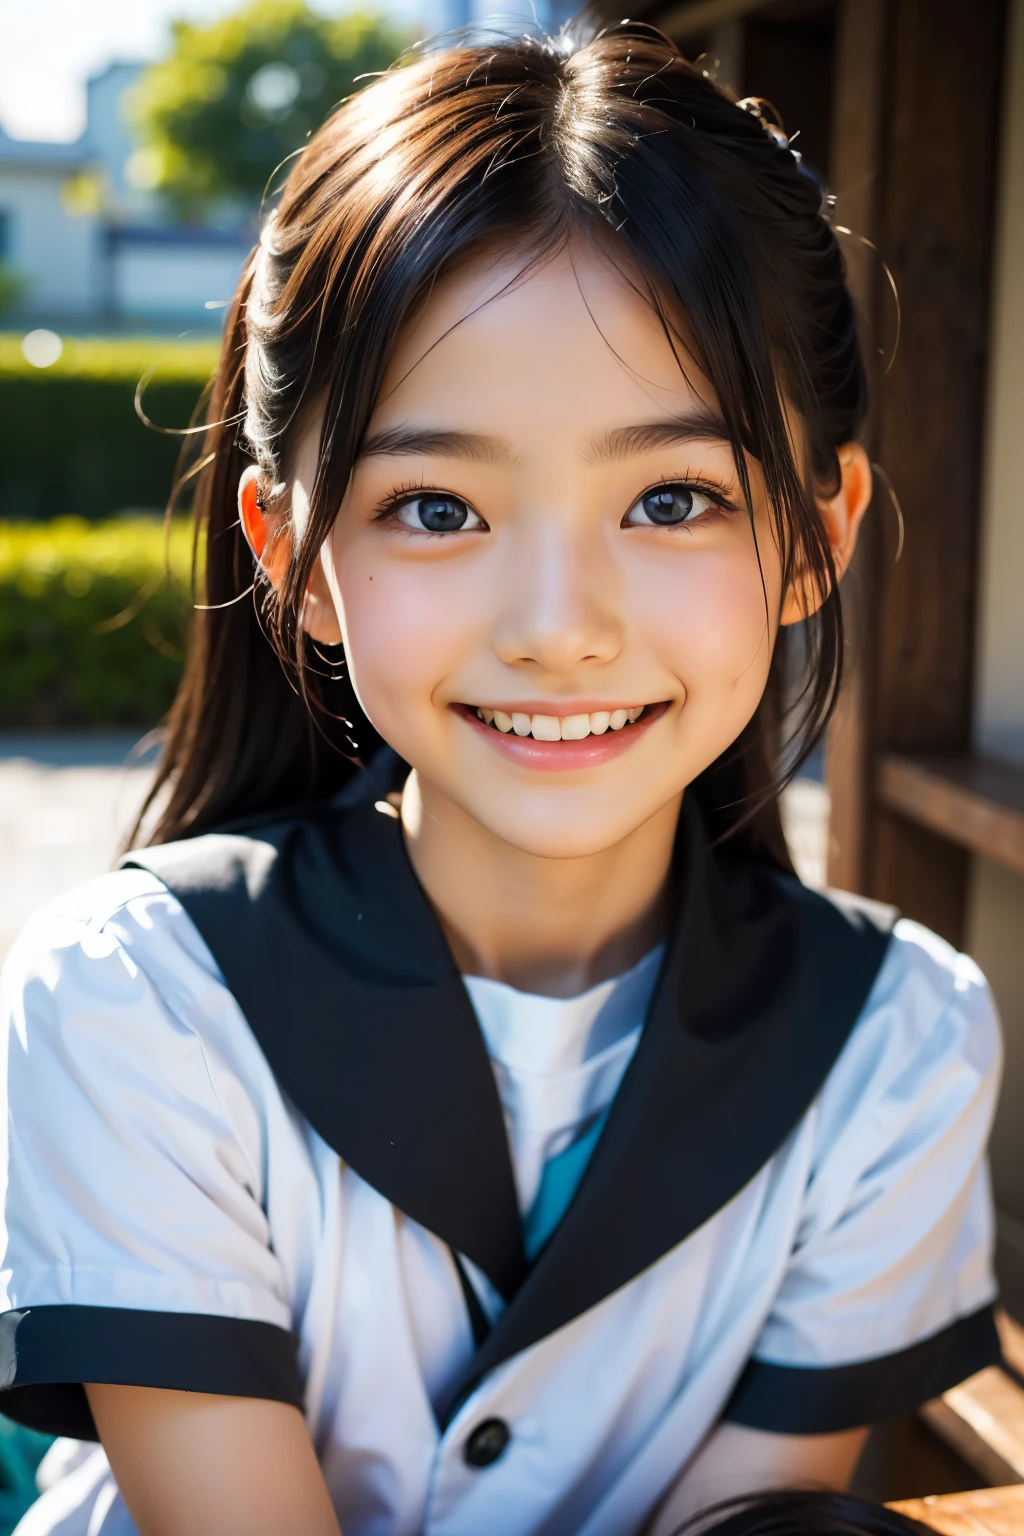 lentille: 135 mm f1.8, (la plus haute qualité),(Photos brutes), (Table:1.1), (Belle fille japonaise de 9 ans), visage mignon, (Visage profondément ciselé:0.7), (taches de rousseur:0.4), dappled lumière du soleil, éclairage dramatique, (uniforme scolaire japonais), (sur le campus), Timide, (Photo en gros plan:1.2), (sourire),, (yeux pétillants)、(lumière du soleil)